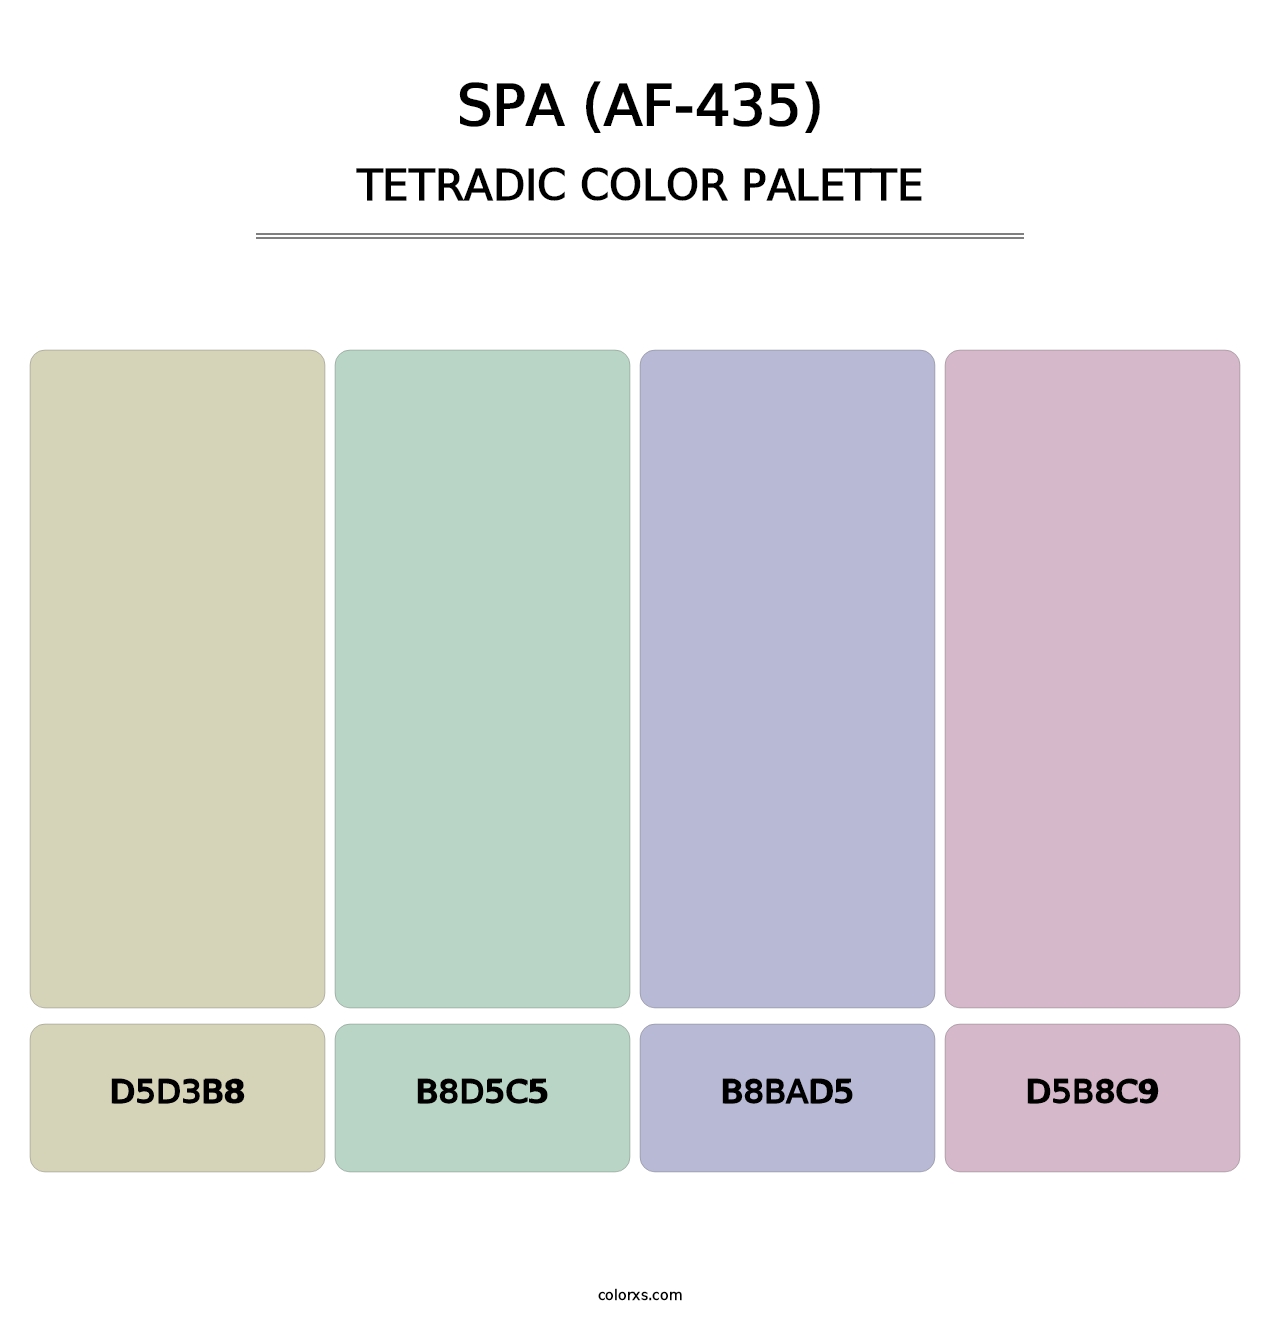 Spa (AF-435) - Tetradic Color Palette